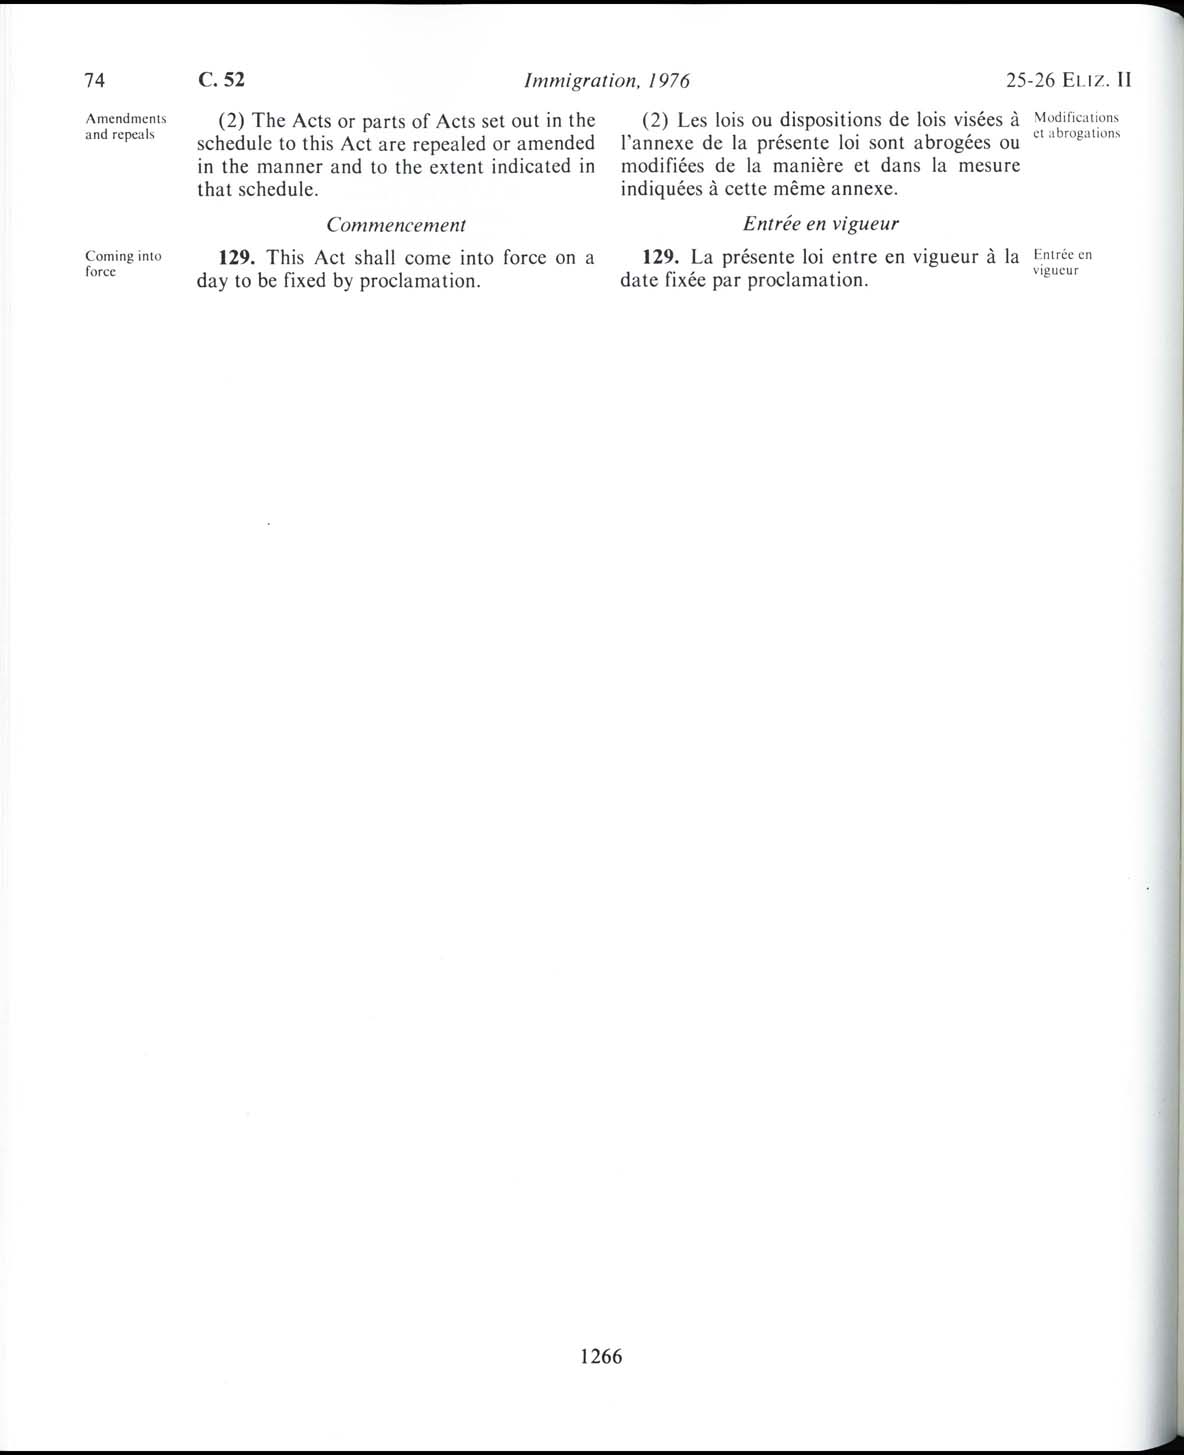 Page 1266 Loi sur l’immigration de 1976